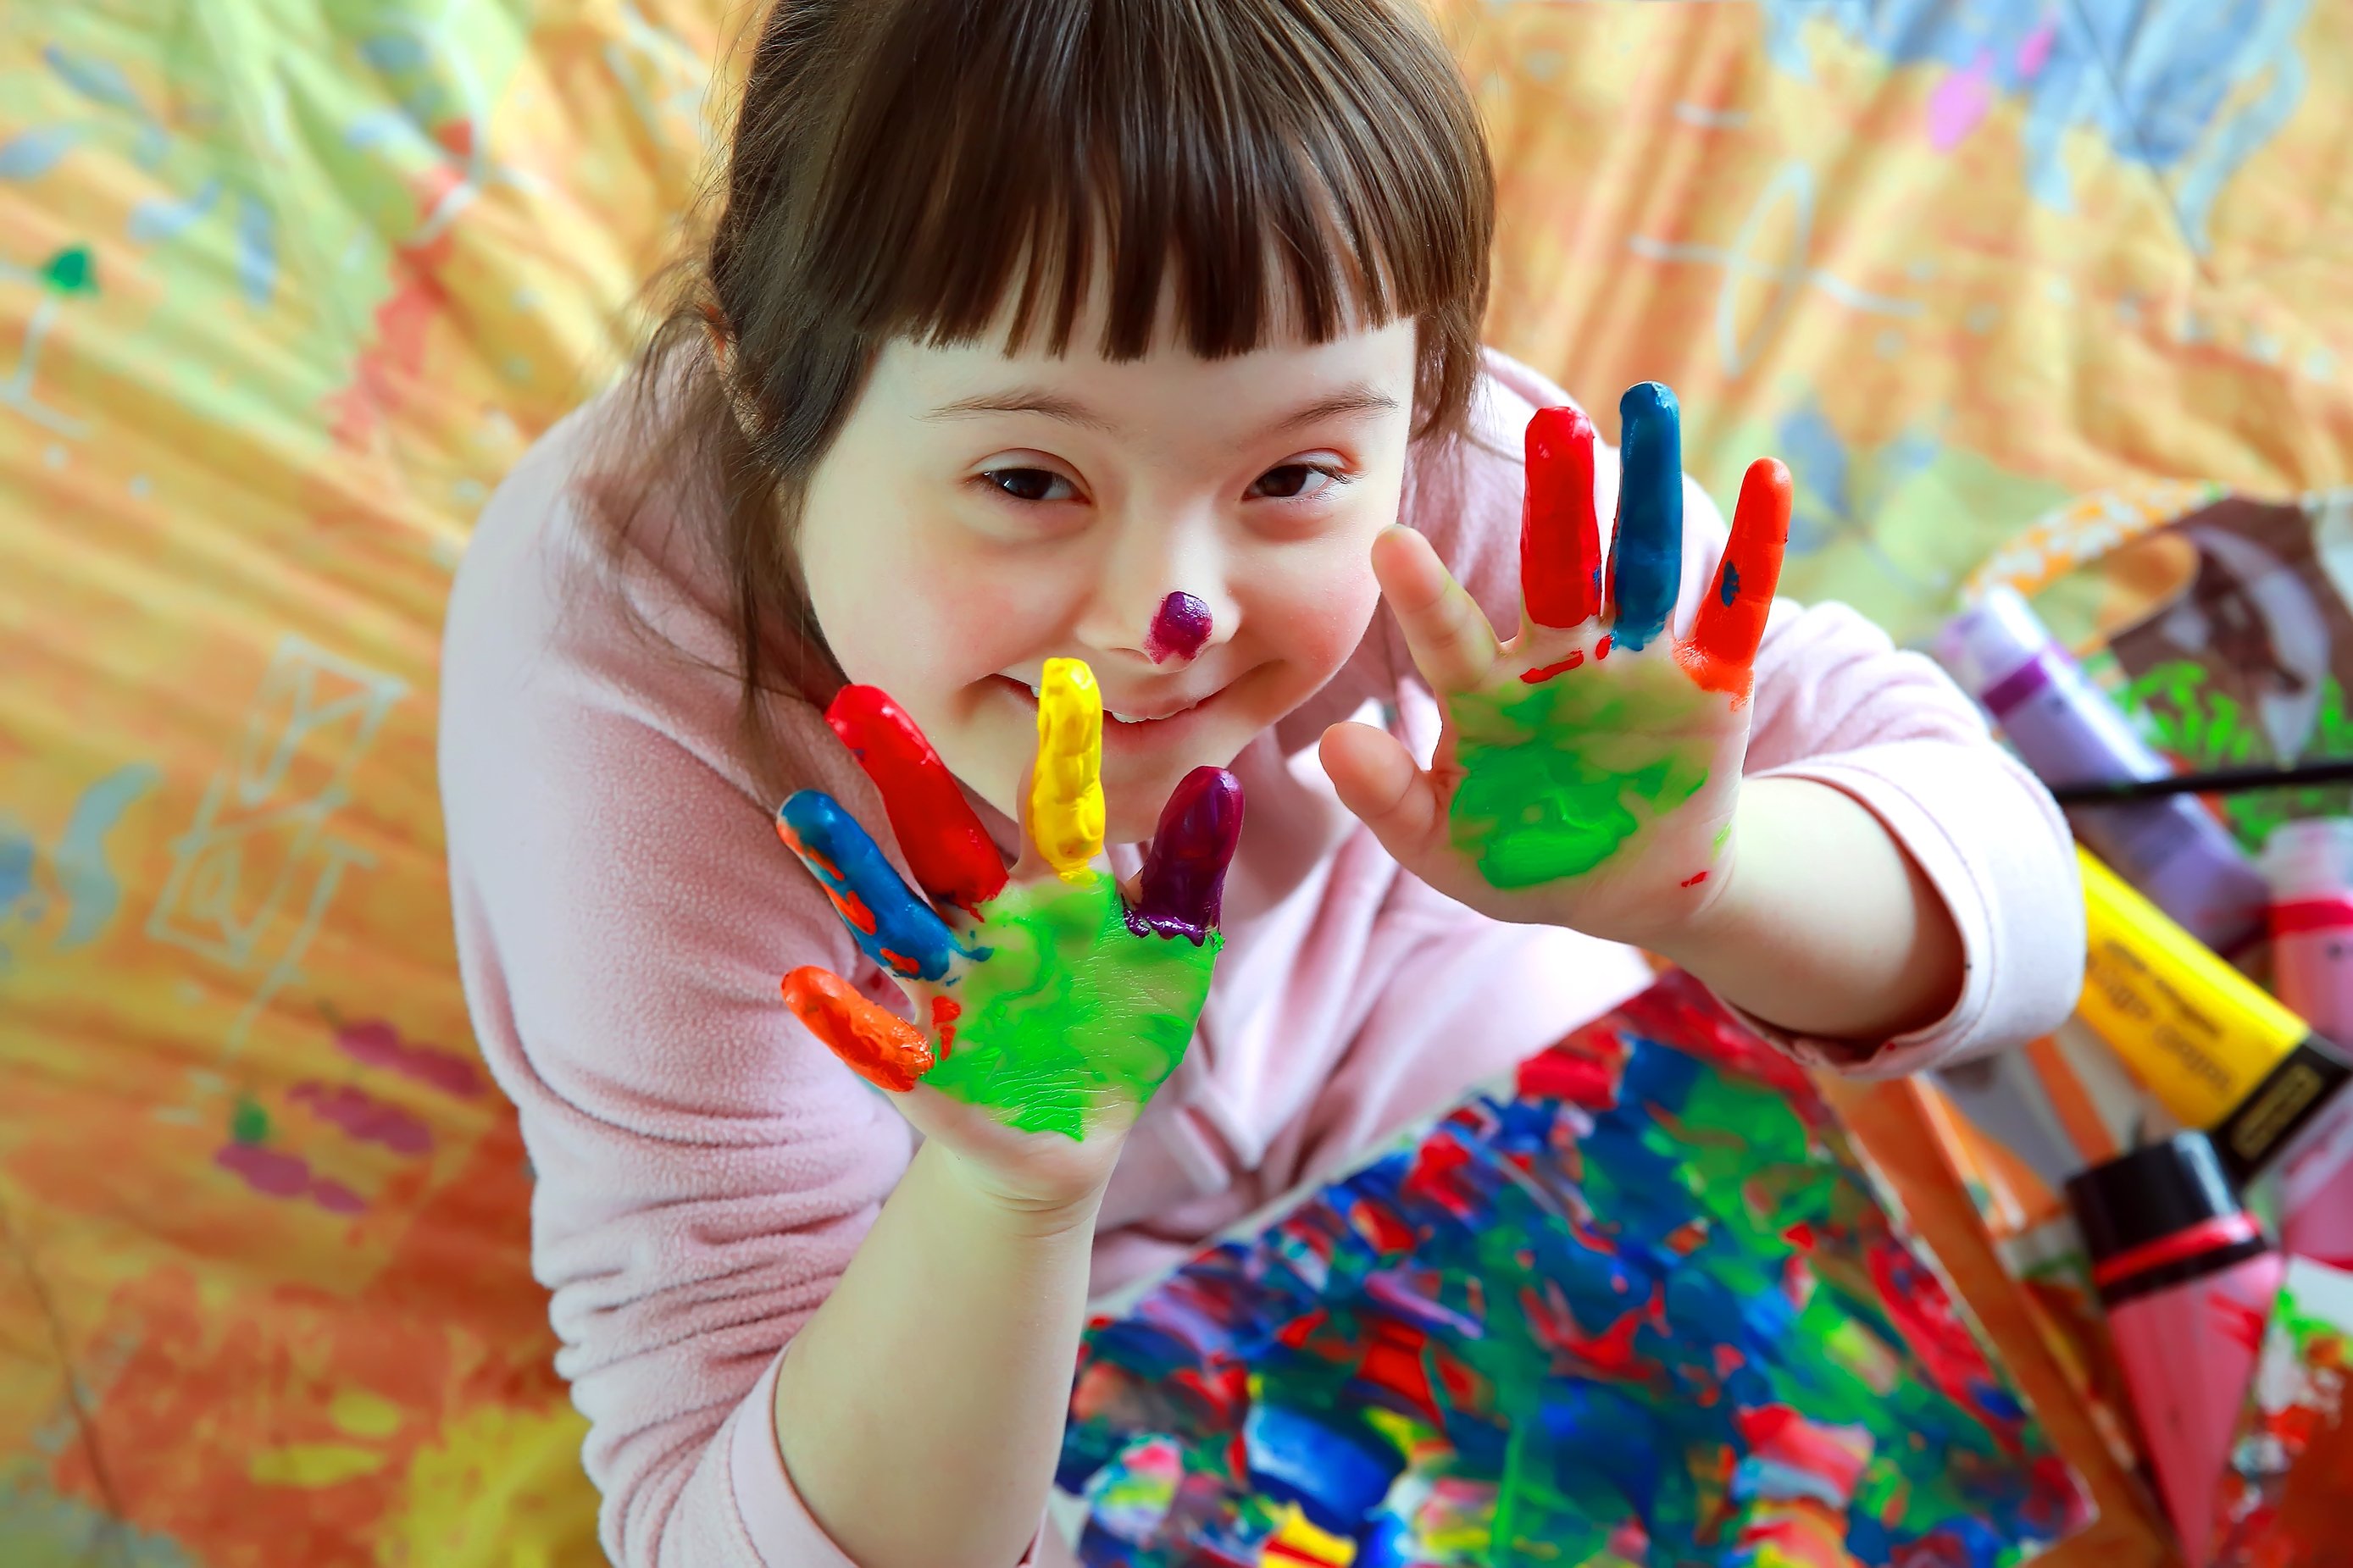 une petite fille avec les mains remplis de peinture est présente sur cette photo